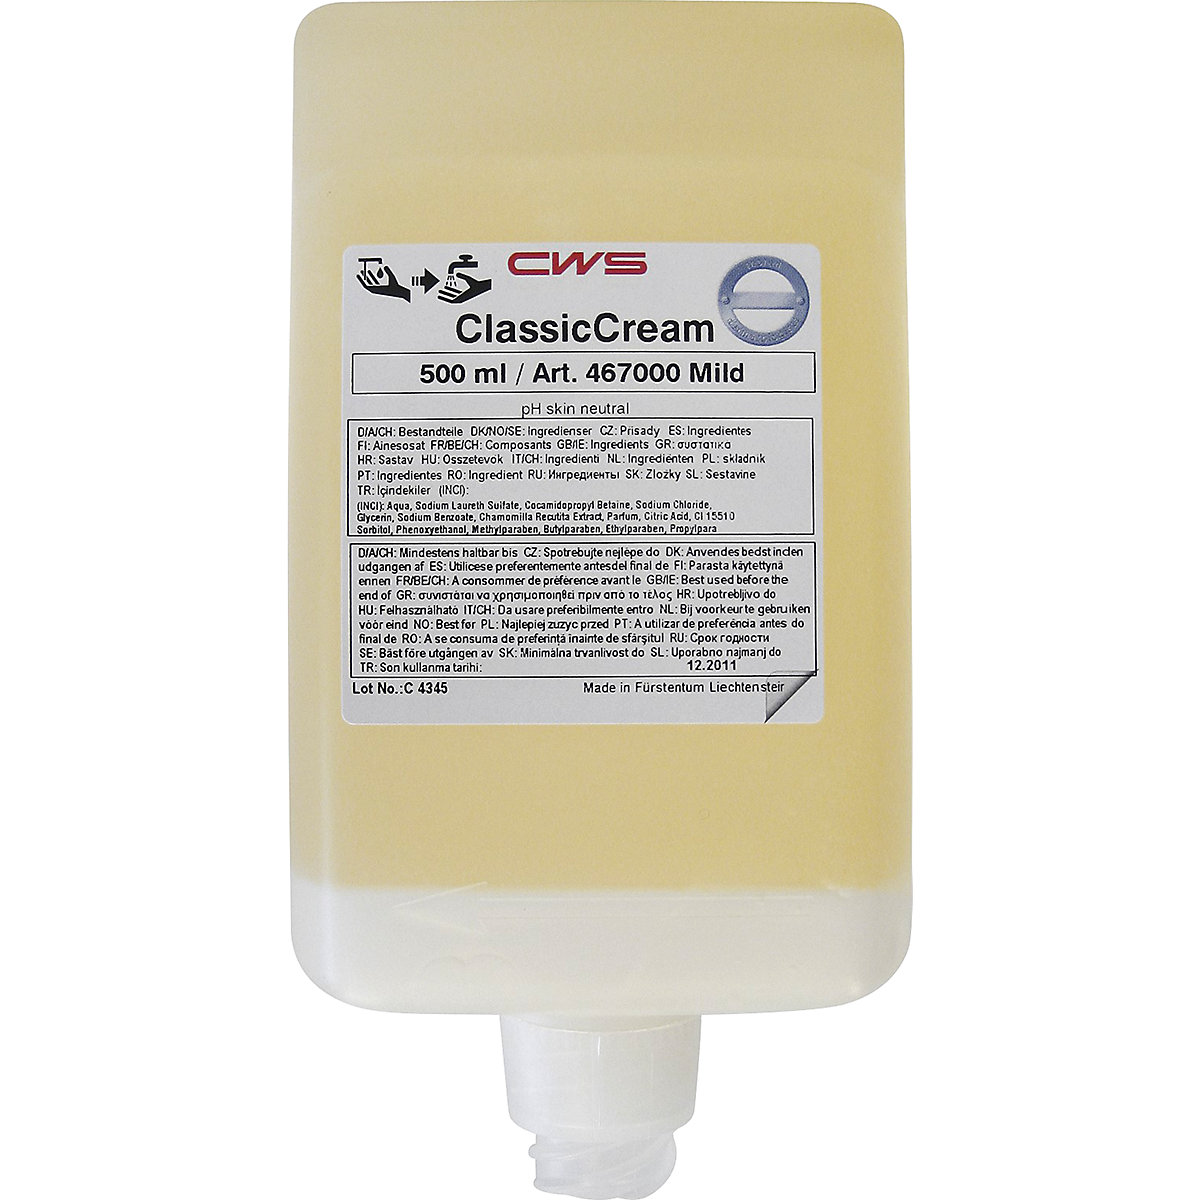 Classic Cream liquid soap – CWS